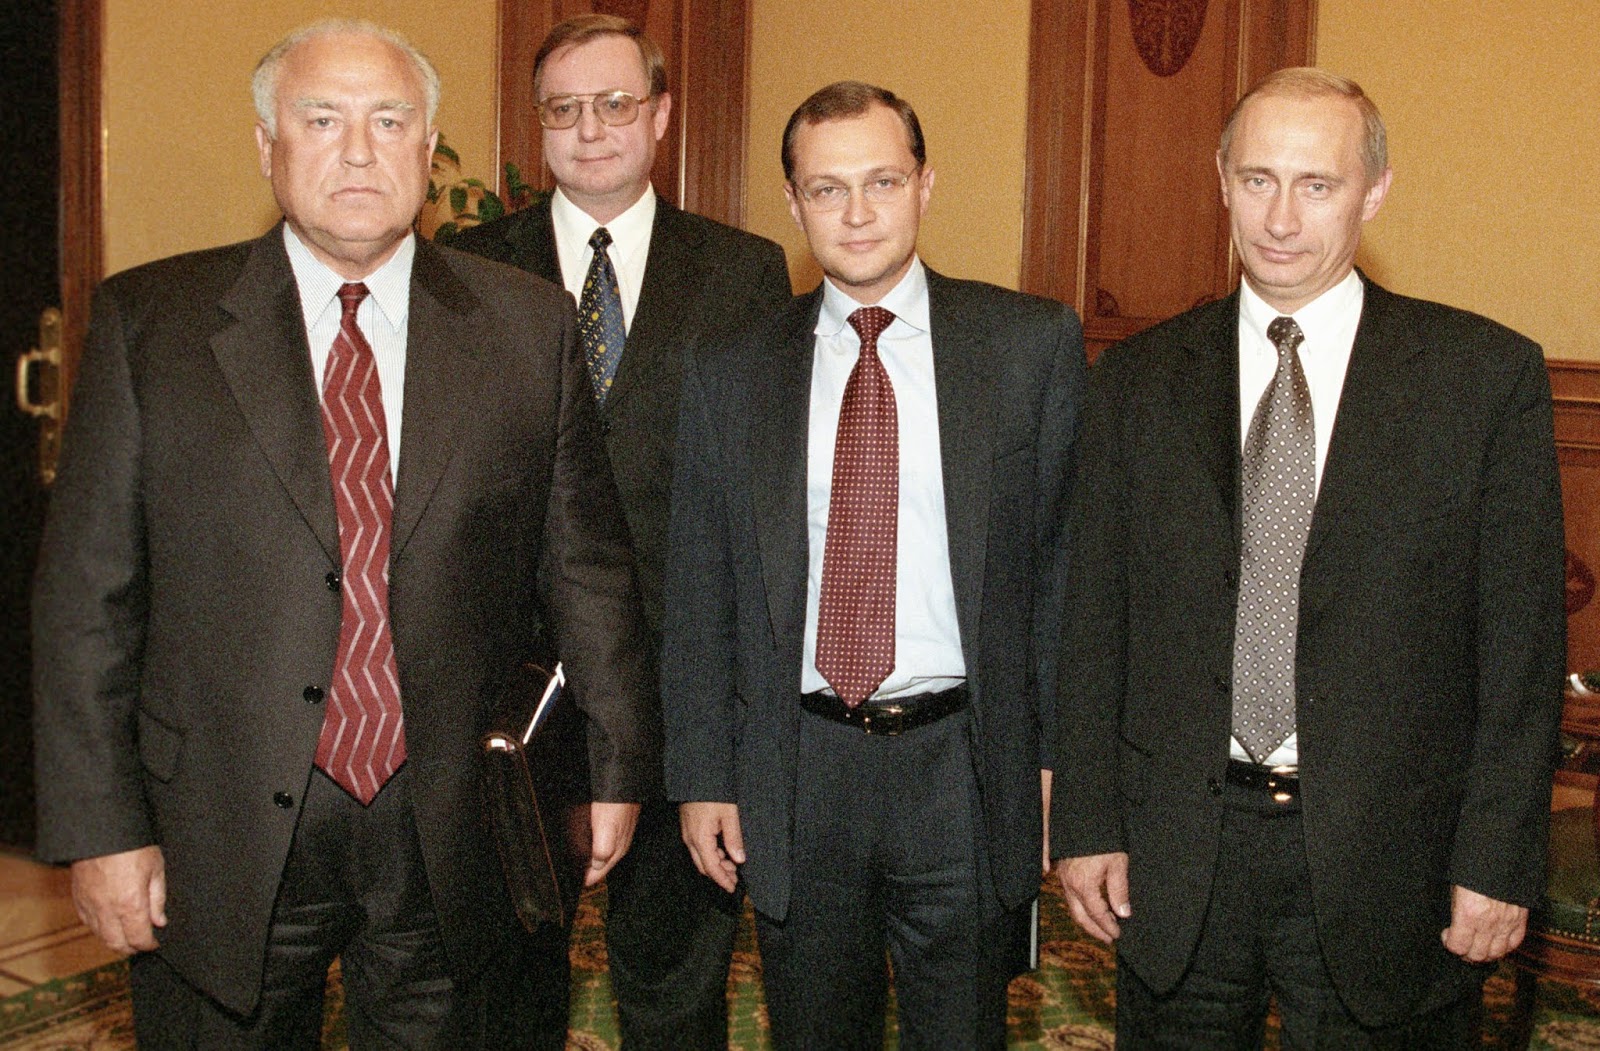 Премьер министр черномырдин. Премьер министр Степашин в 1999 году. Кириенко Черномырдин Степашин Ельцин.